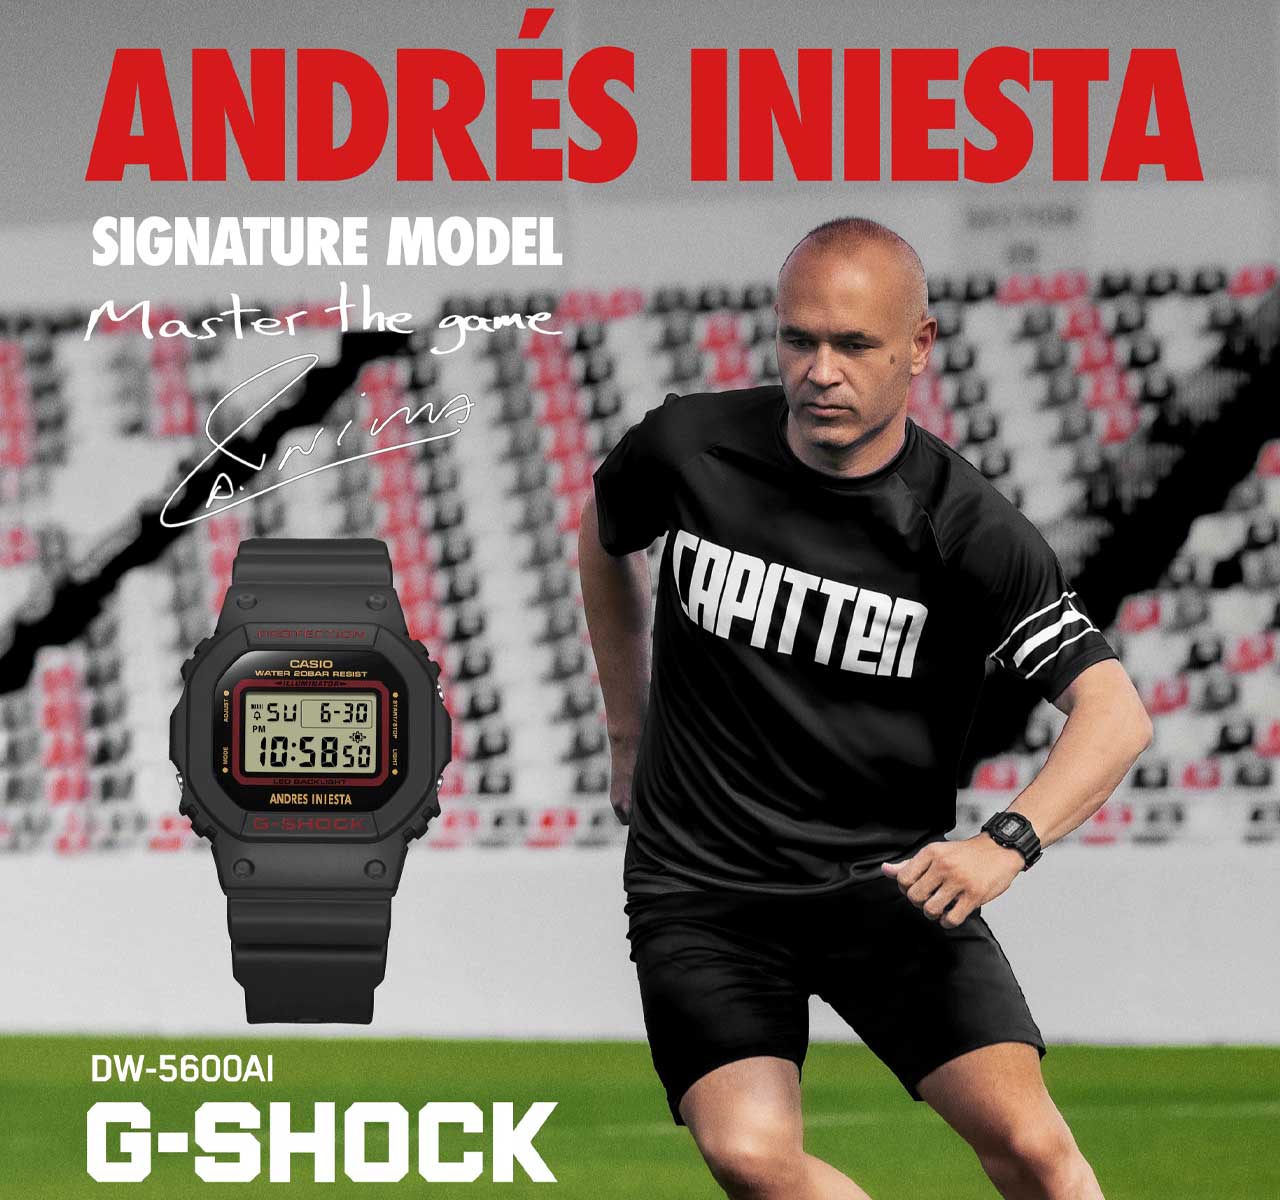 Andrés Iniesta x G-SHOCK Signature Model